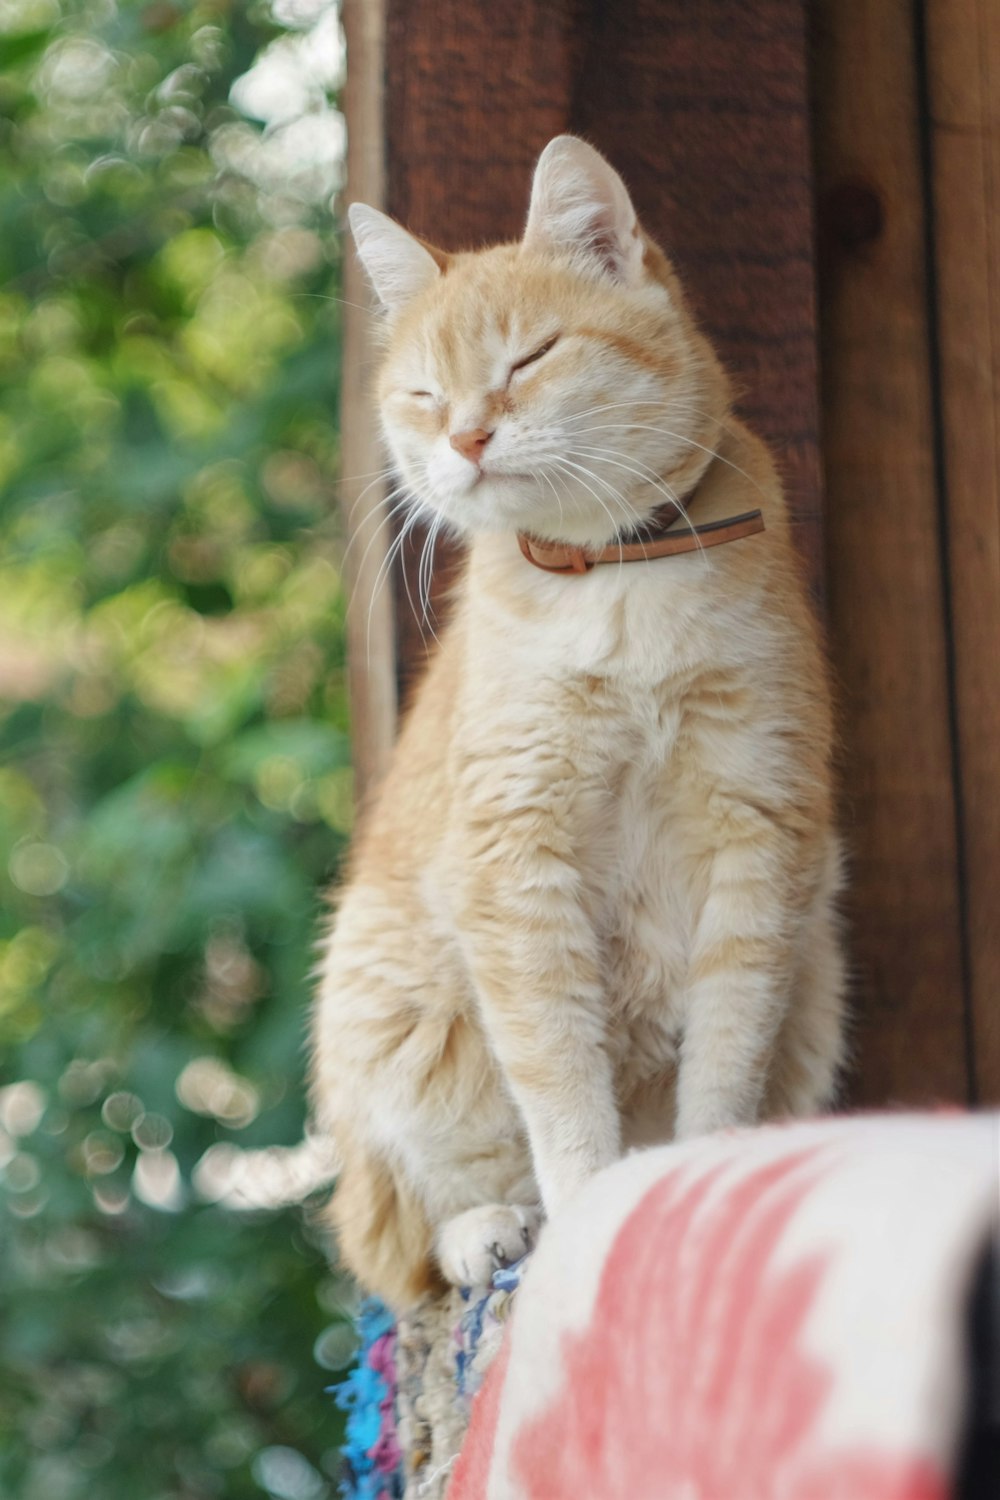 gato atigrado naranja sobre textil blanco